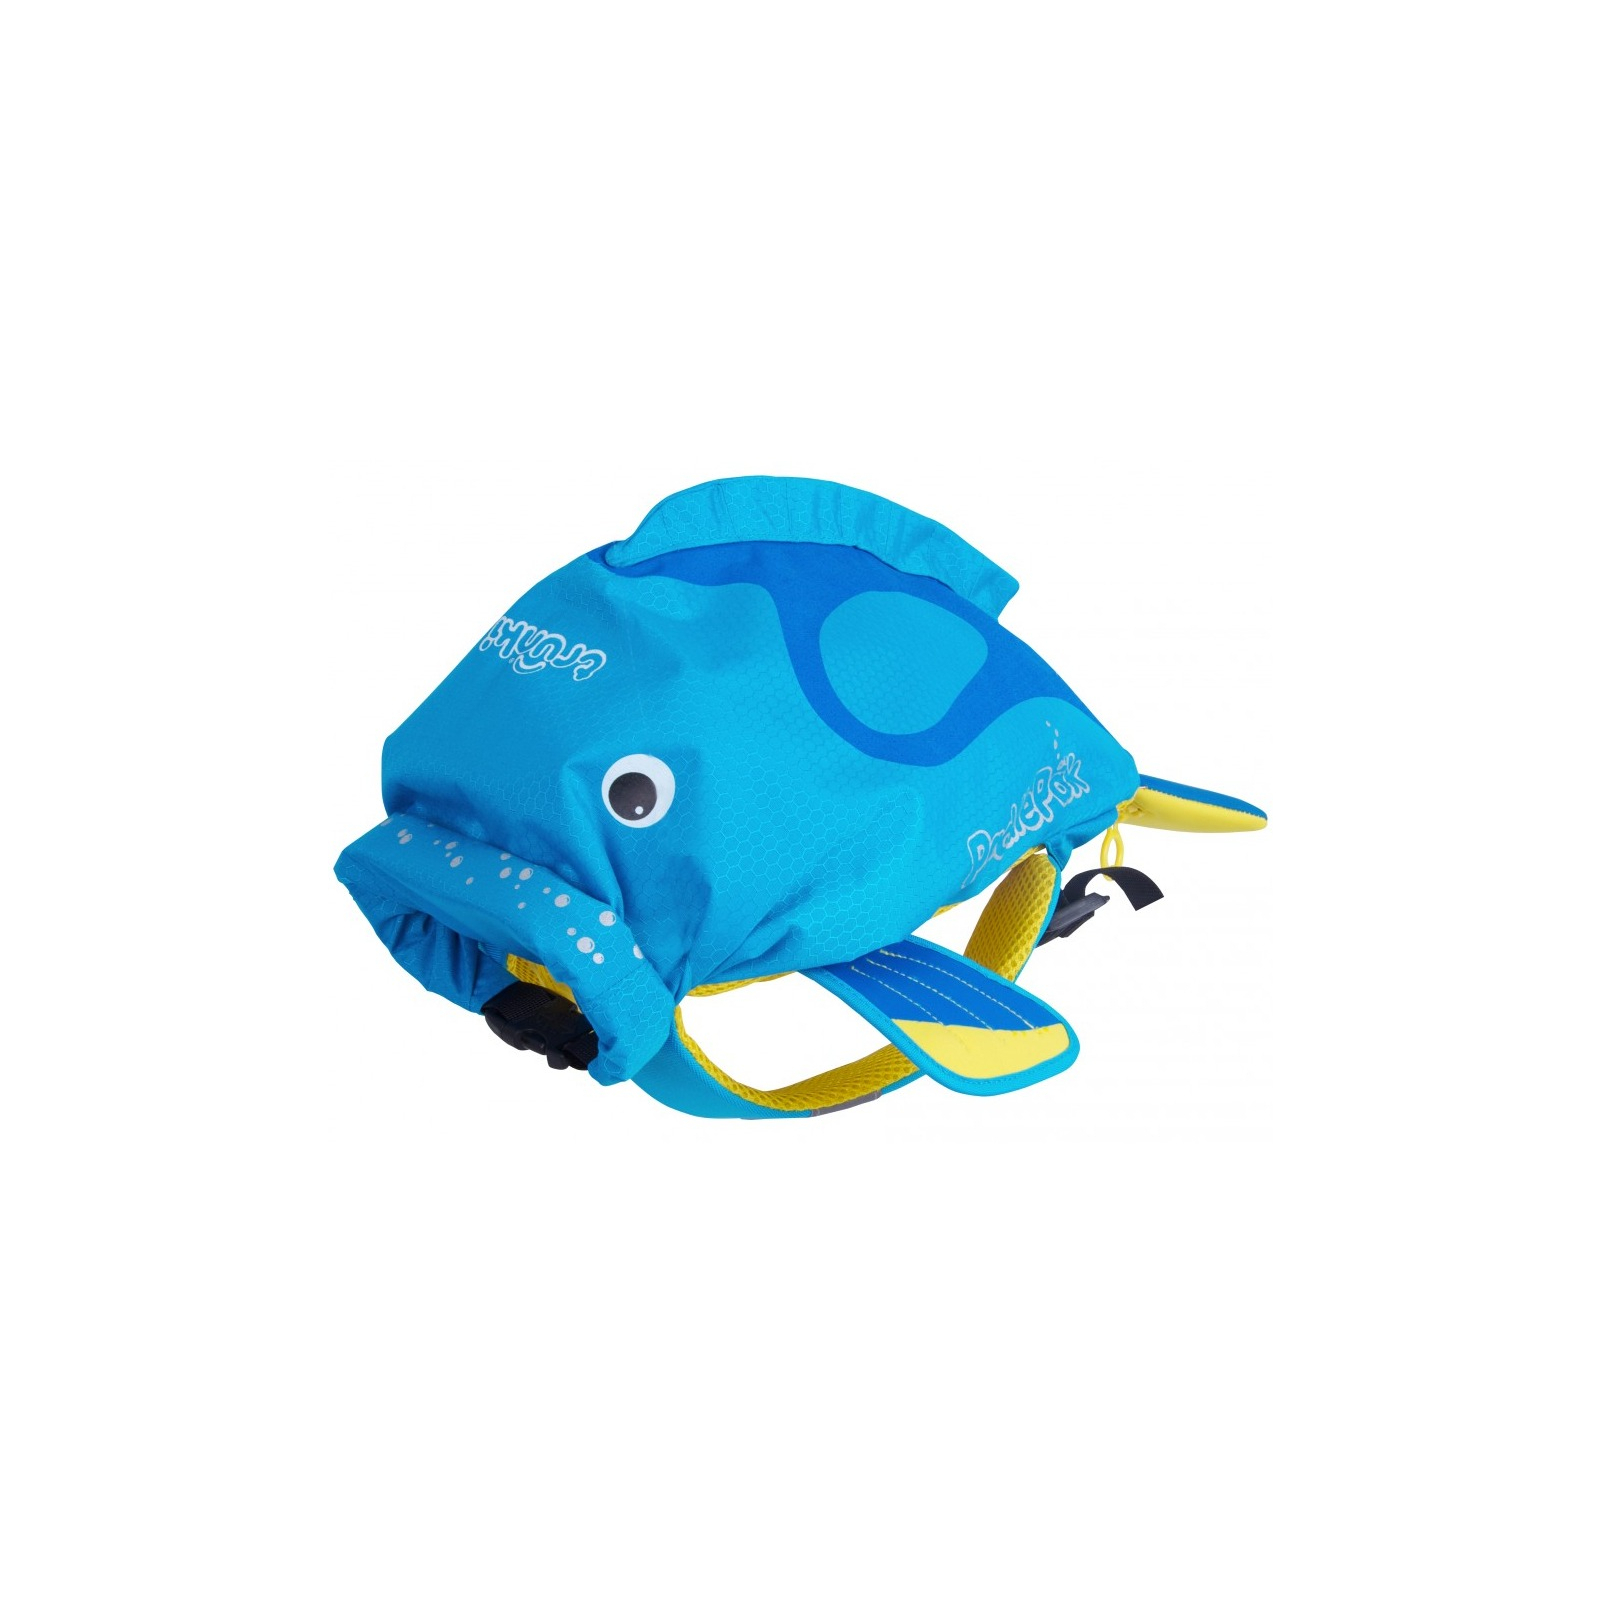 Рюкзак дитячий Trunki PaddlePak Рибка Блакитний (0173-GB01) зображення 2